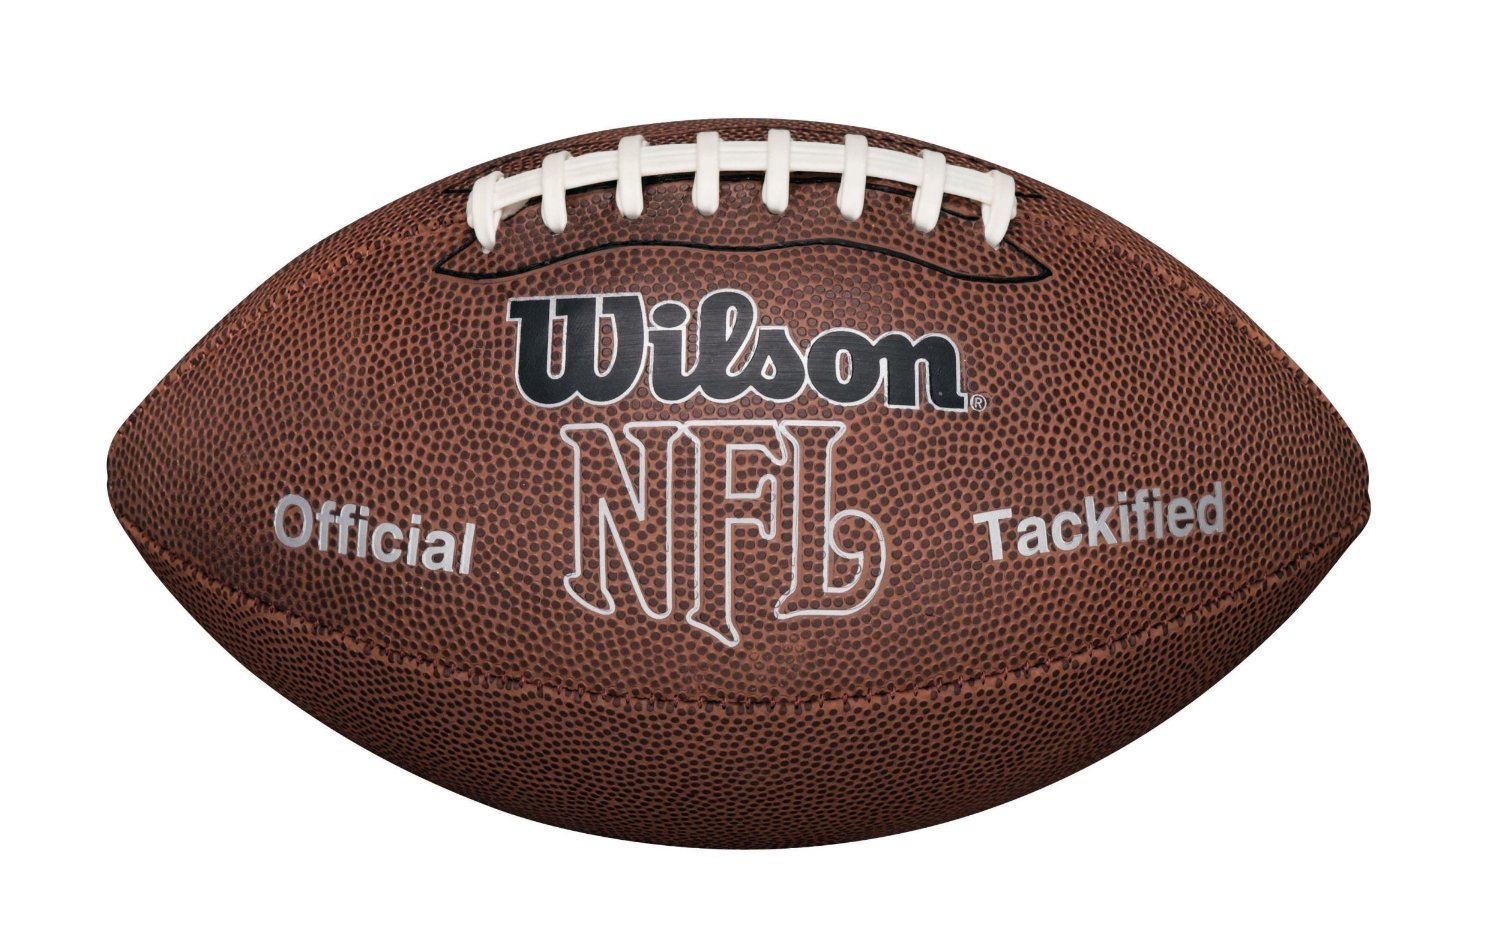 Wilson NFL MVP Football Only $6.45!